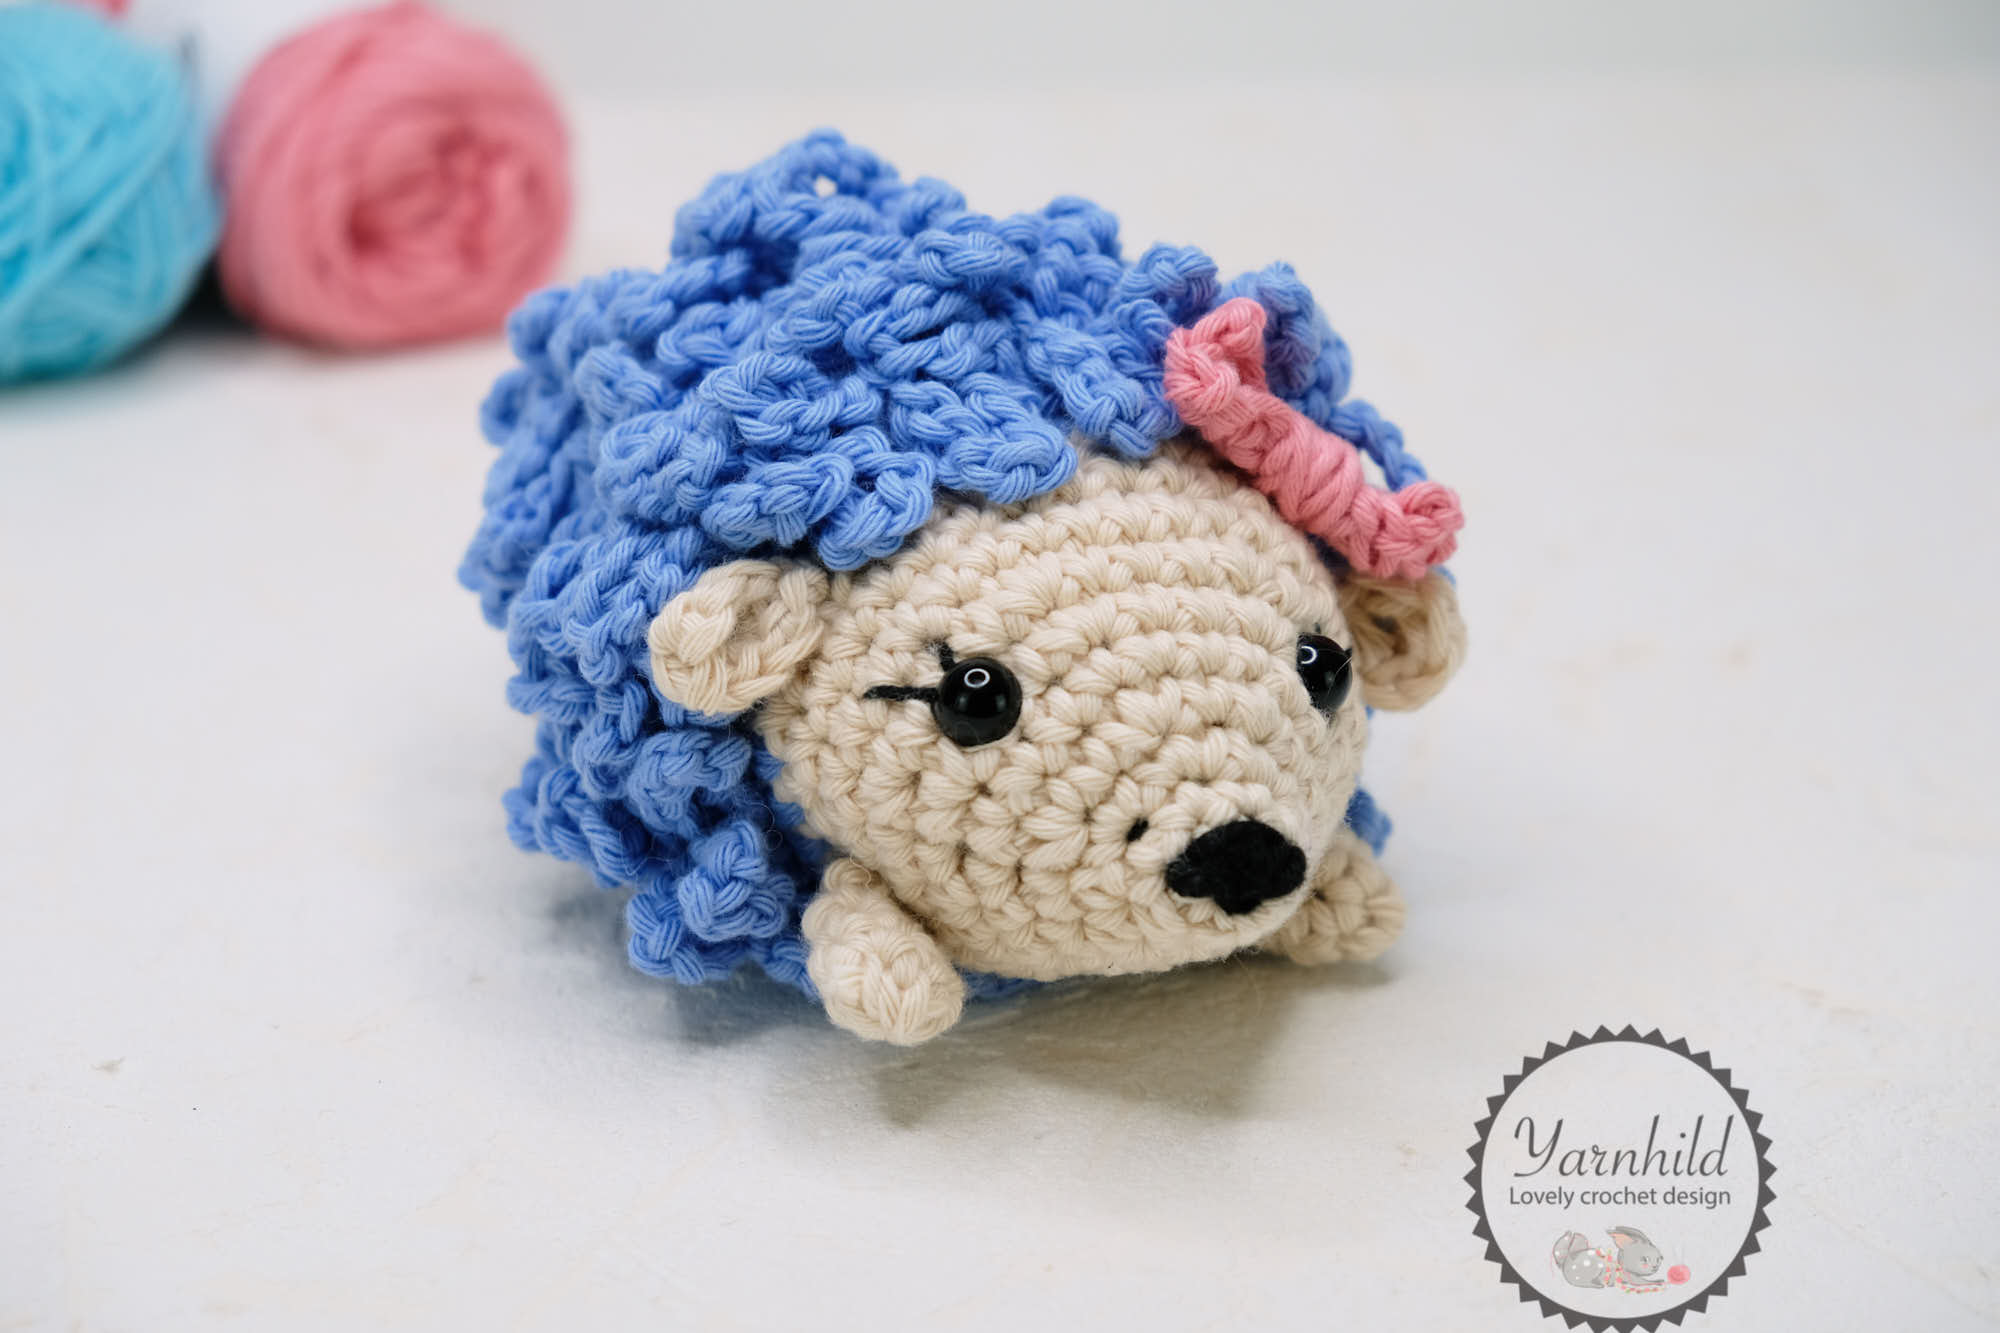 Crochet fluffy ghost Crochet pattern by FollowThe Yarn